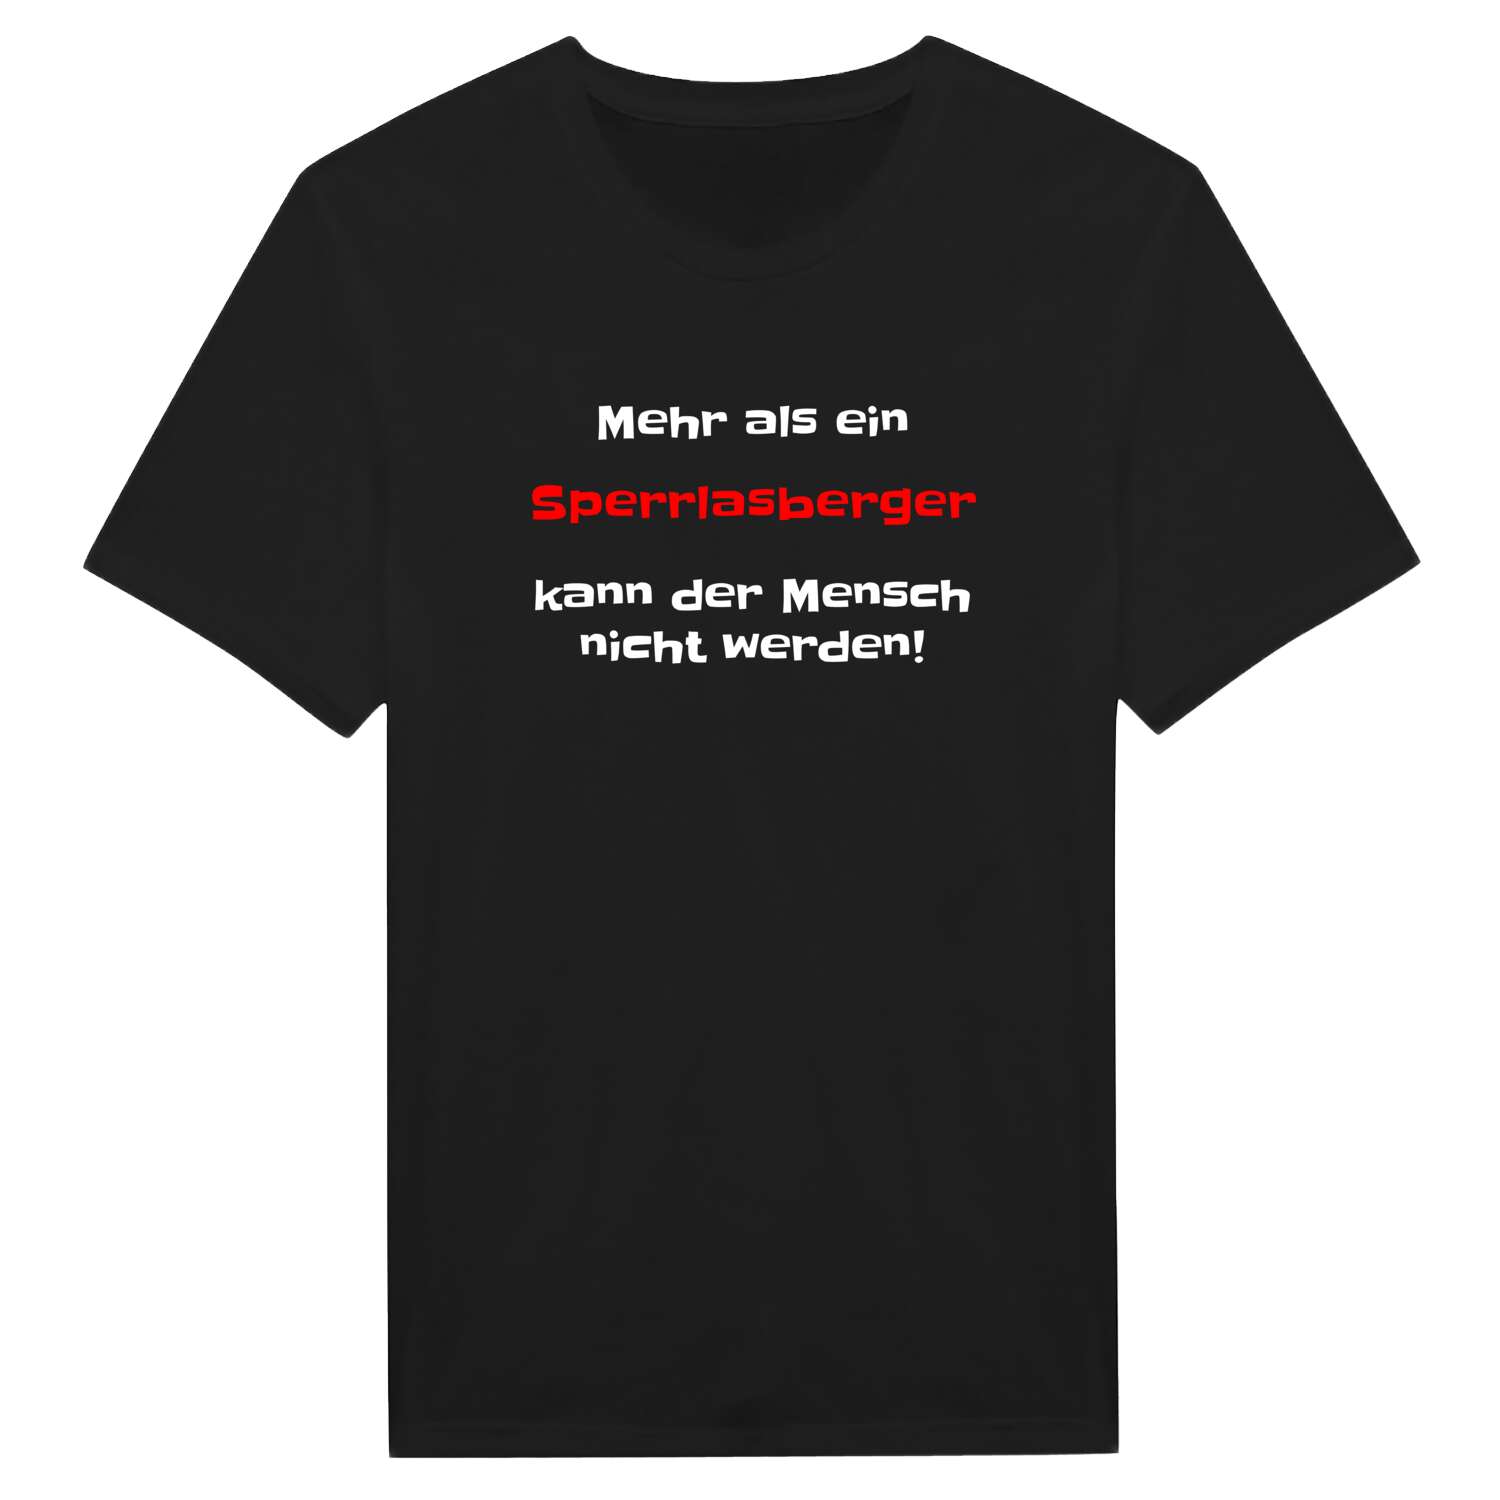 Sperrlasberg T-Shirt »Mehr als ein«